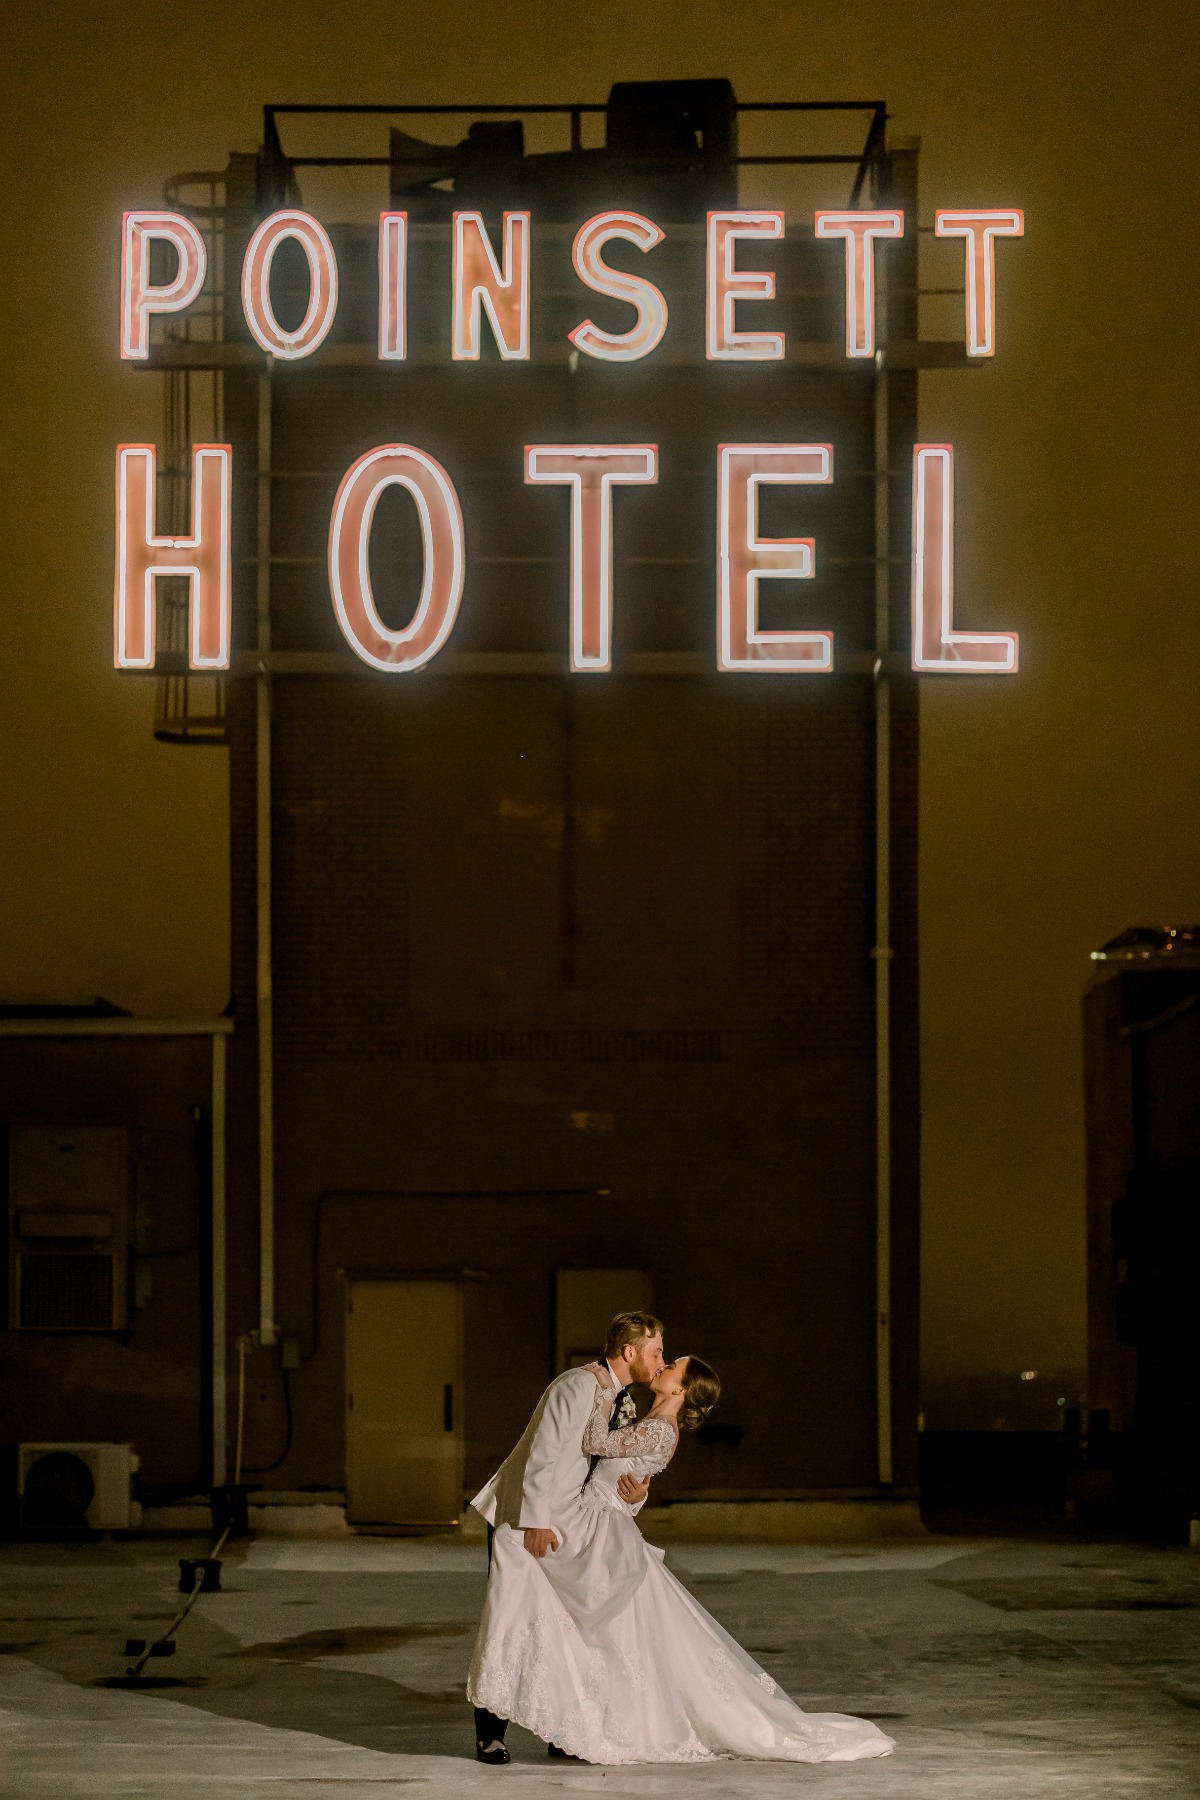 Poinsett Hotel wedding portraits 